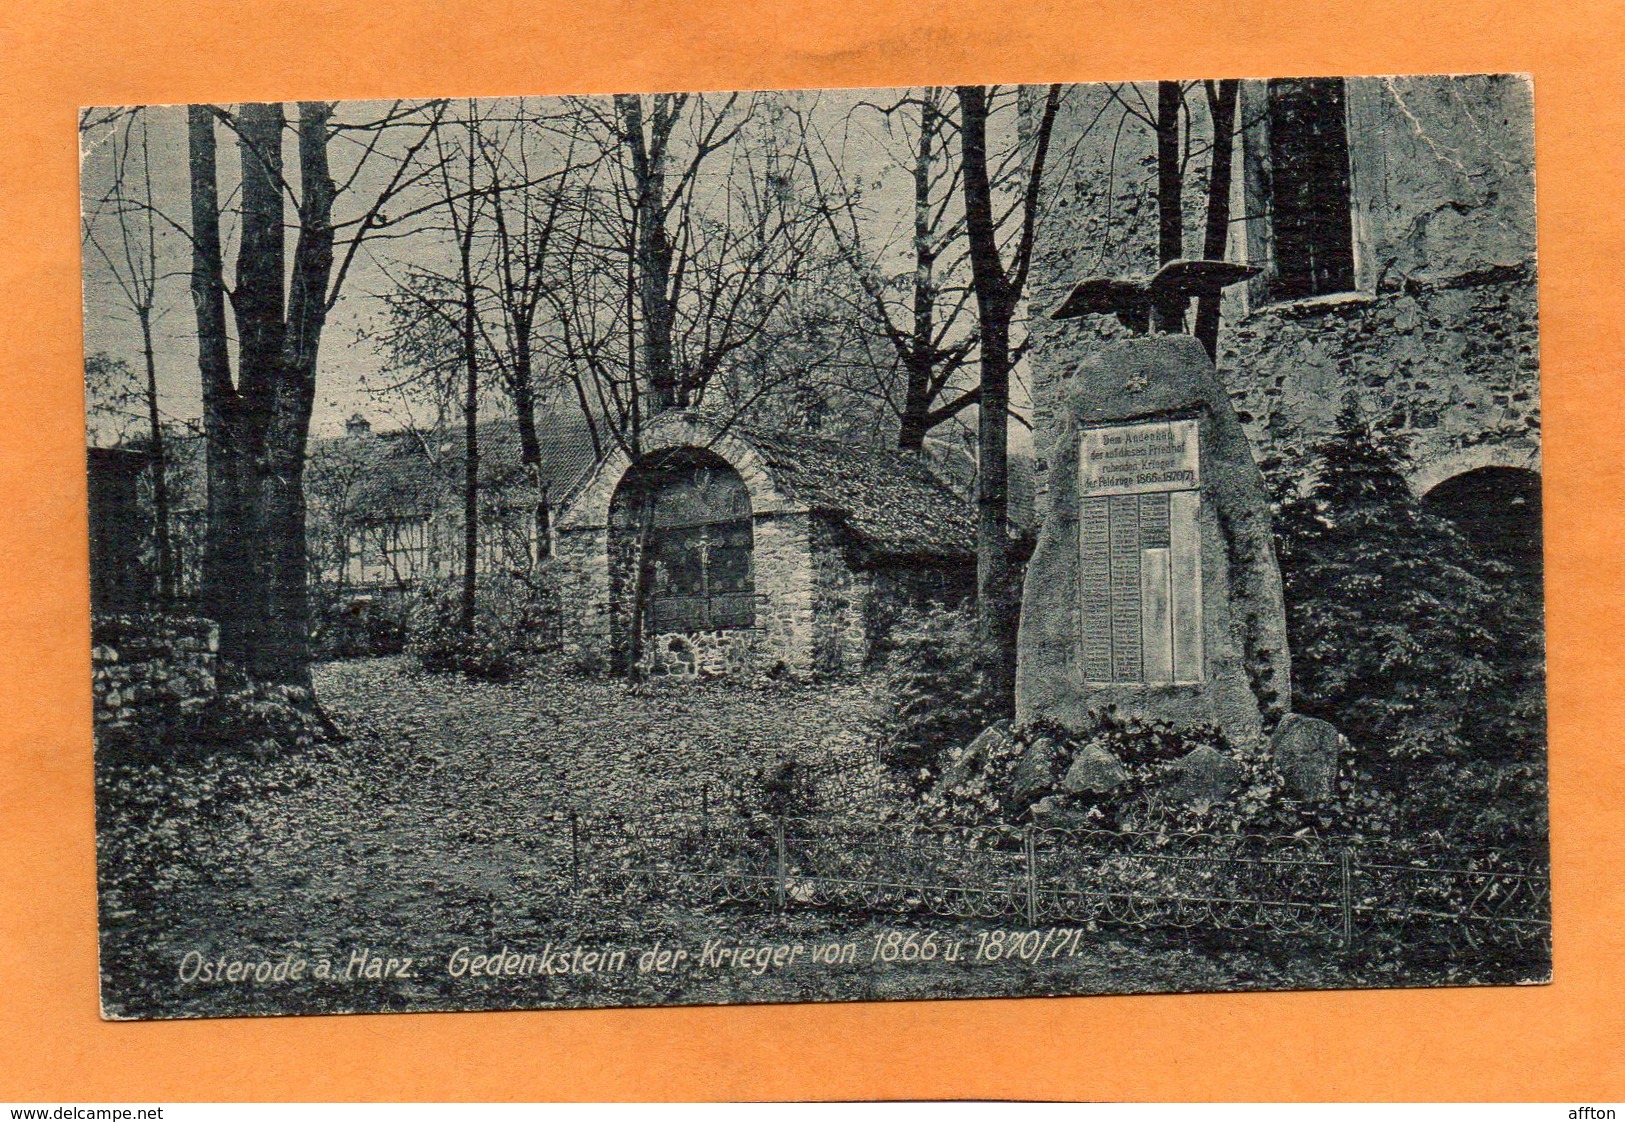 Osterode Am Harz 1930 Postcard - Osterode